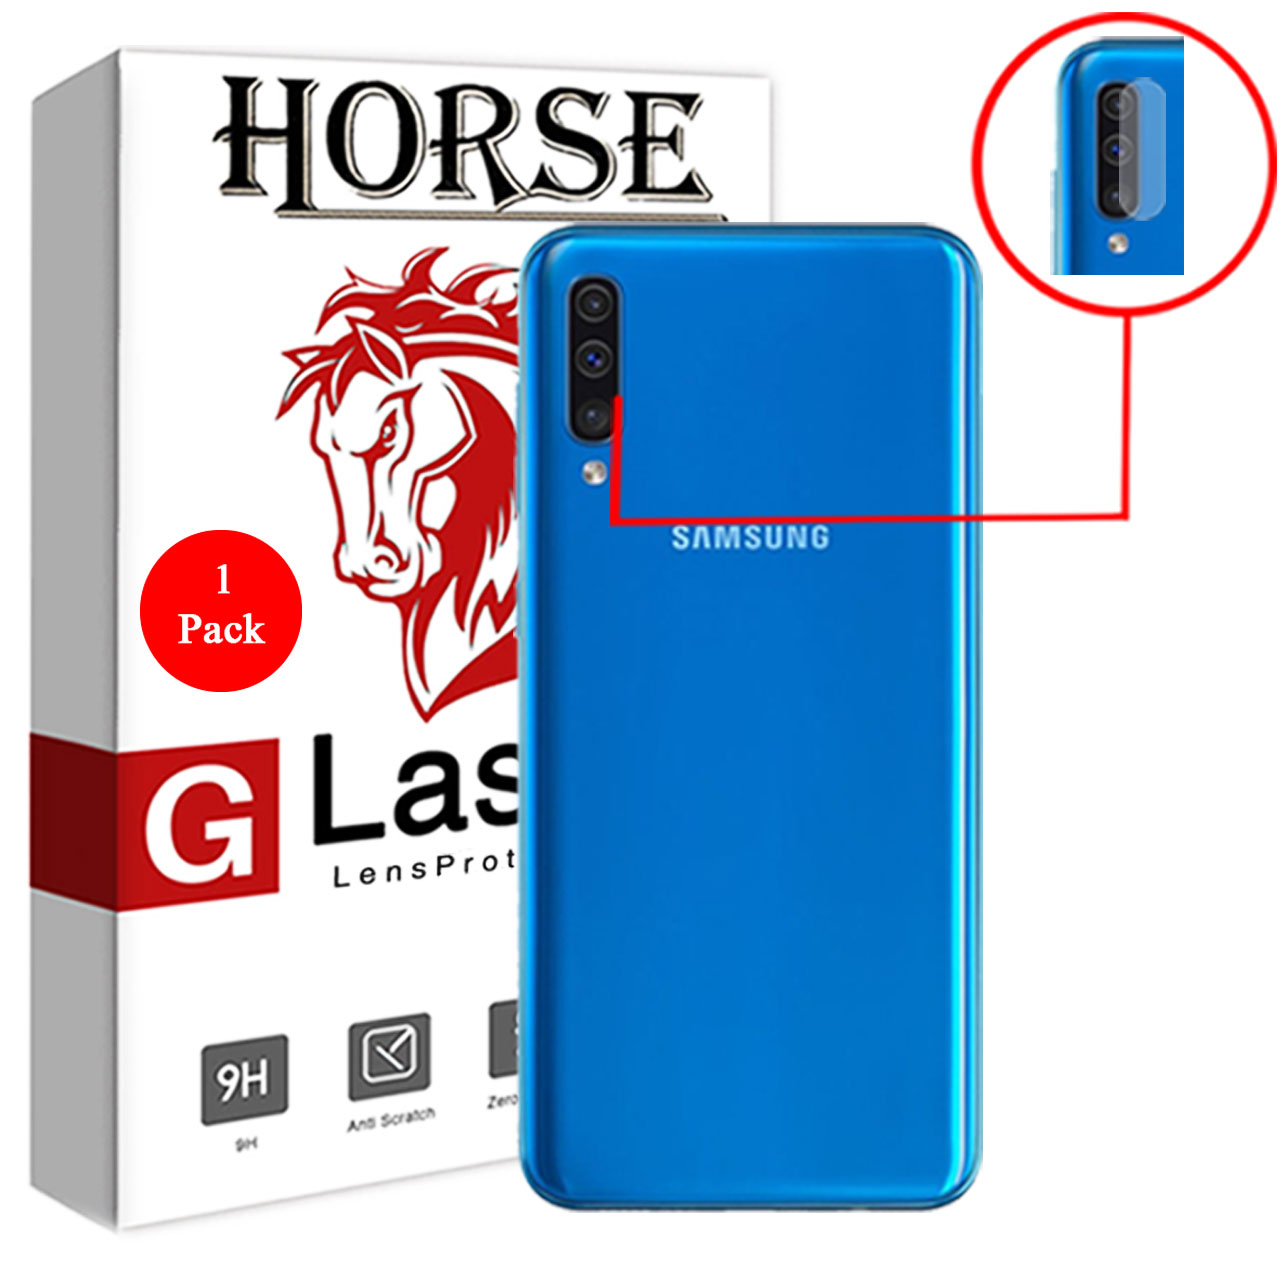 محافظ لنز دوربین گلس هورس مدل UTF مناسب برای گوشی موبایل سامسونگ Galaxy A50